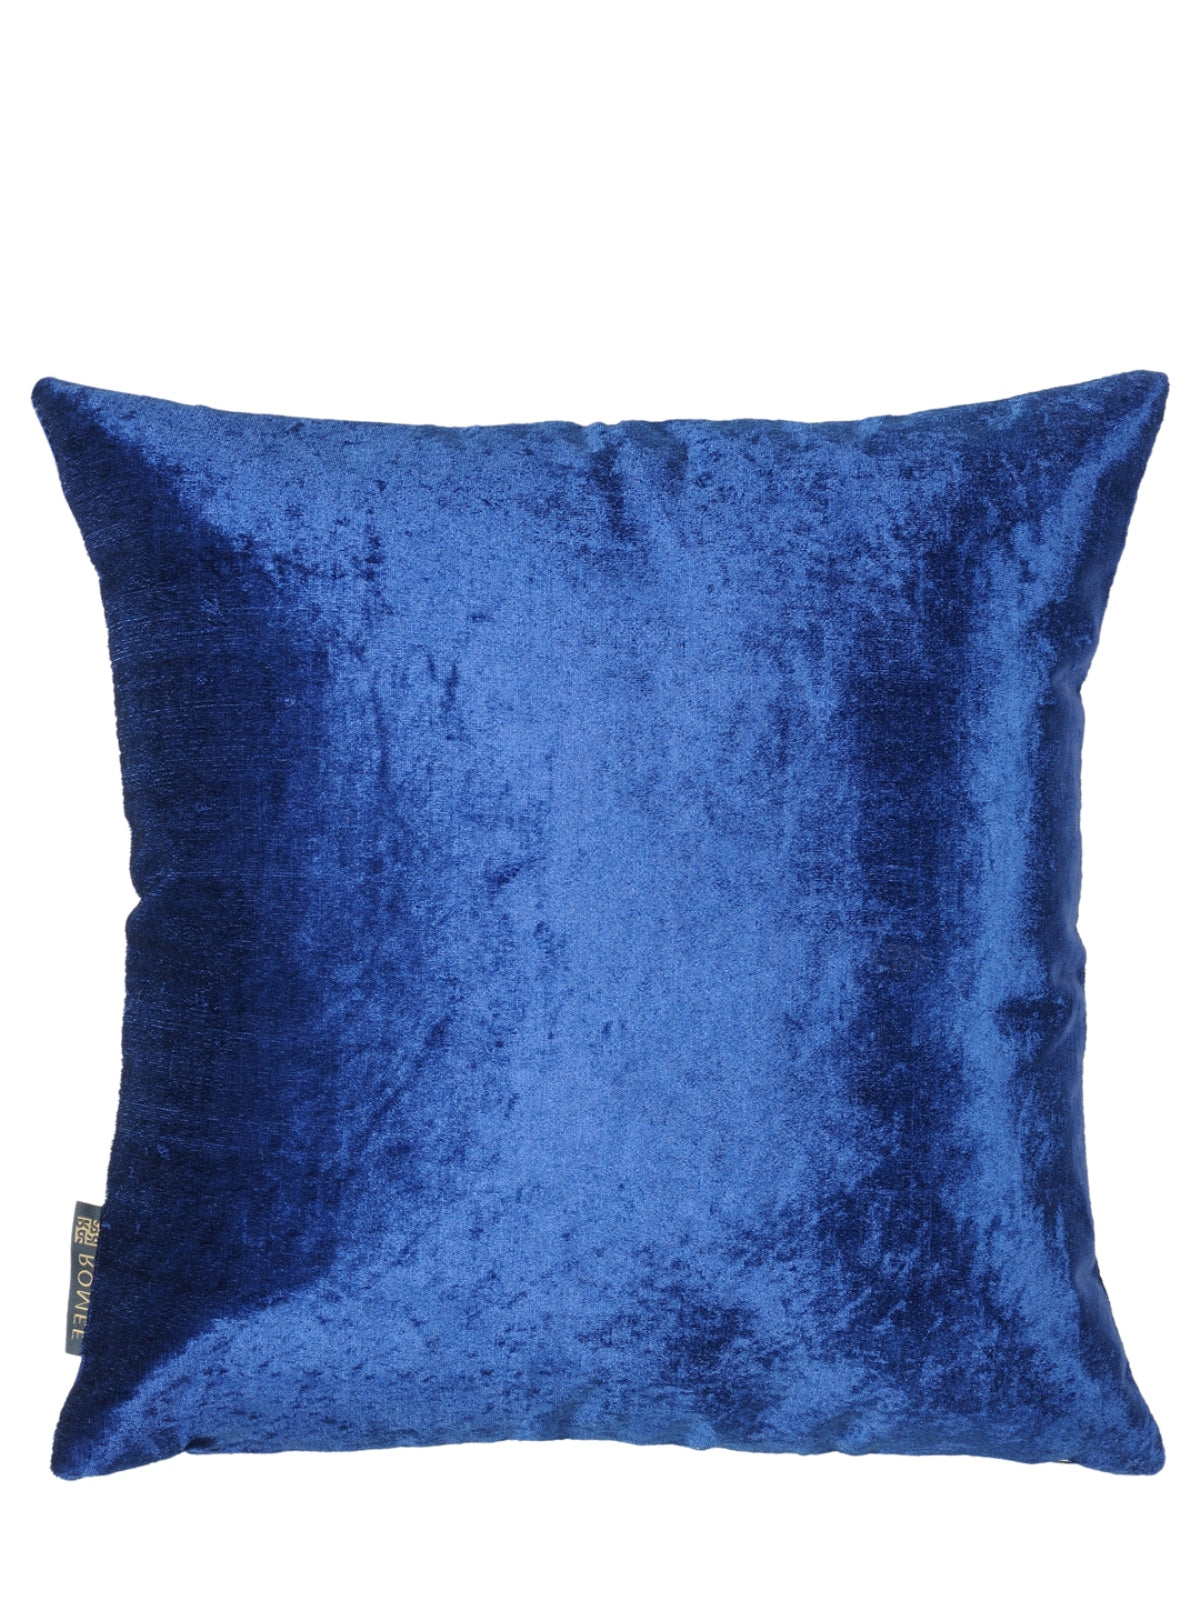 Velvet Plain Cushion Cover, 16 x 16 Inch, Set of 5, Blue